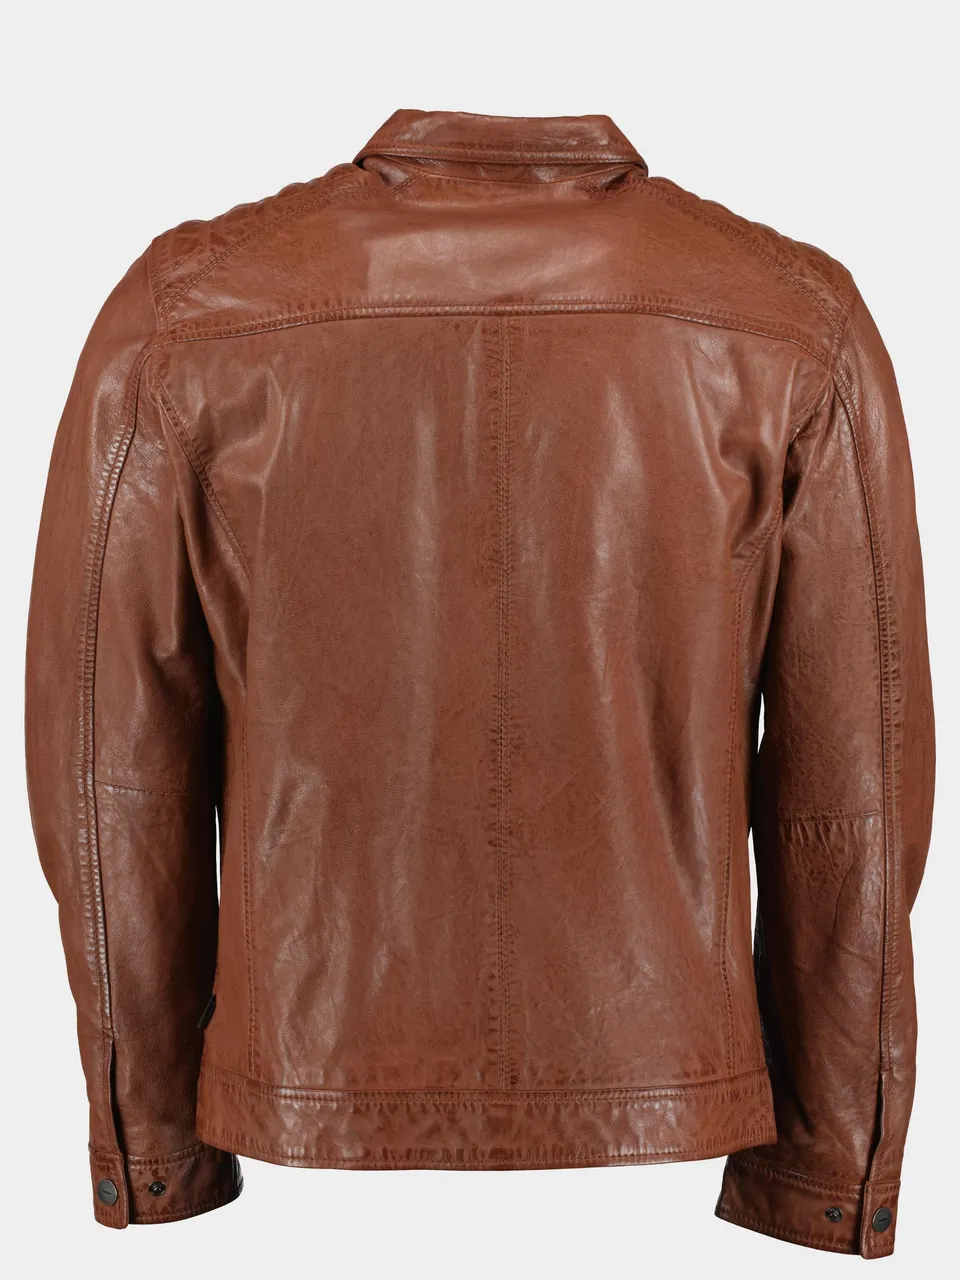 Donders 1860 Lederen jack leather jacket 52347/451